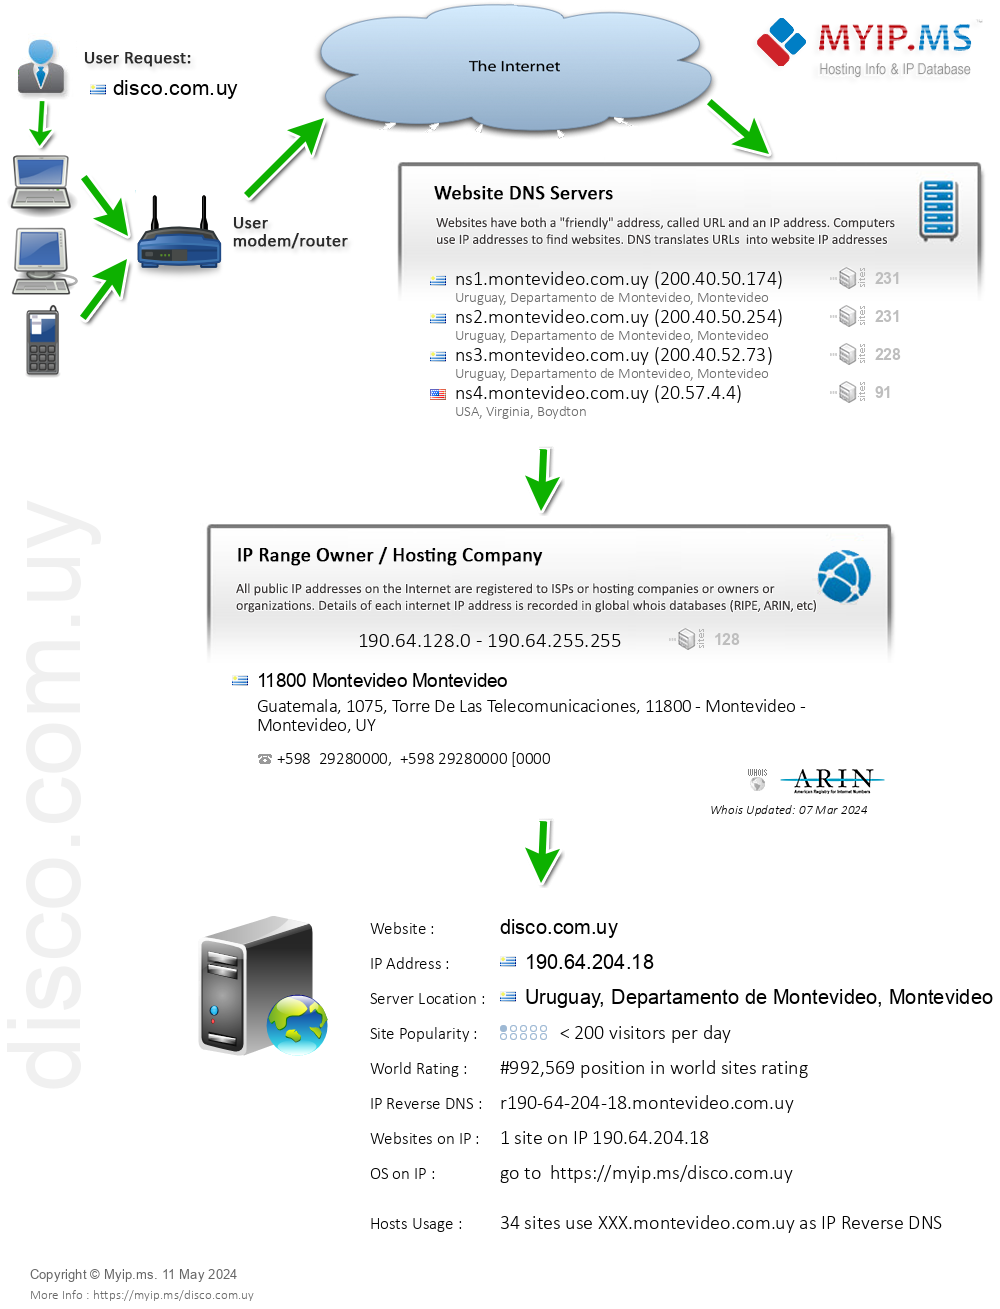 Disco.com.uy - Website Hosting Visual IP Diagram